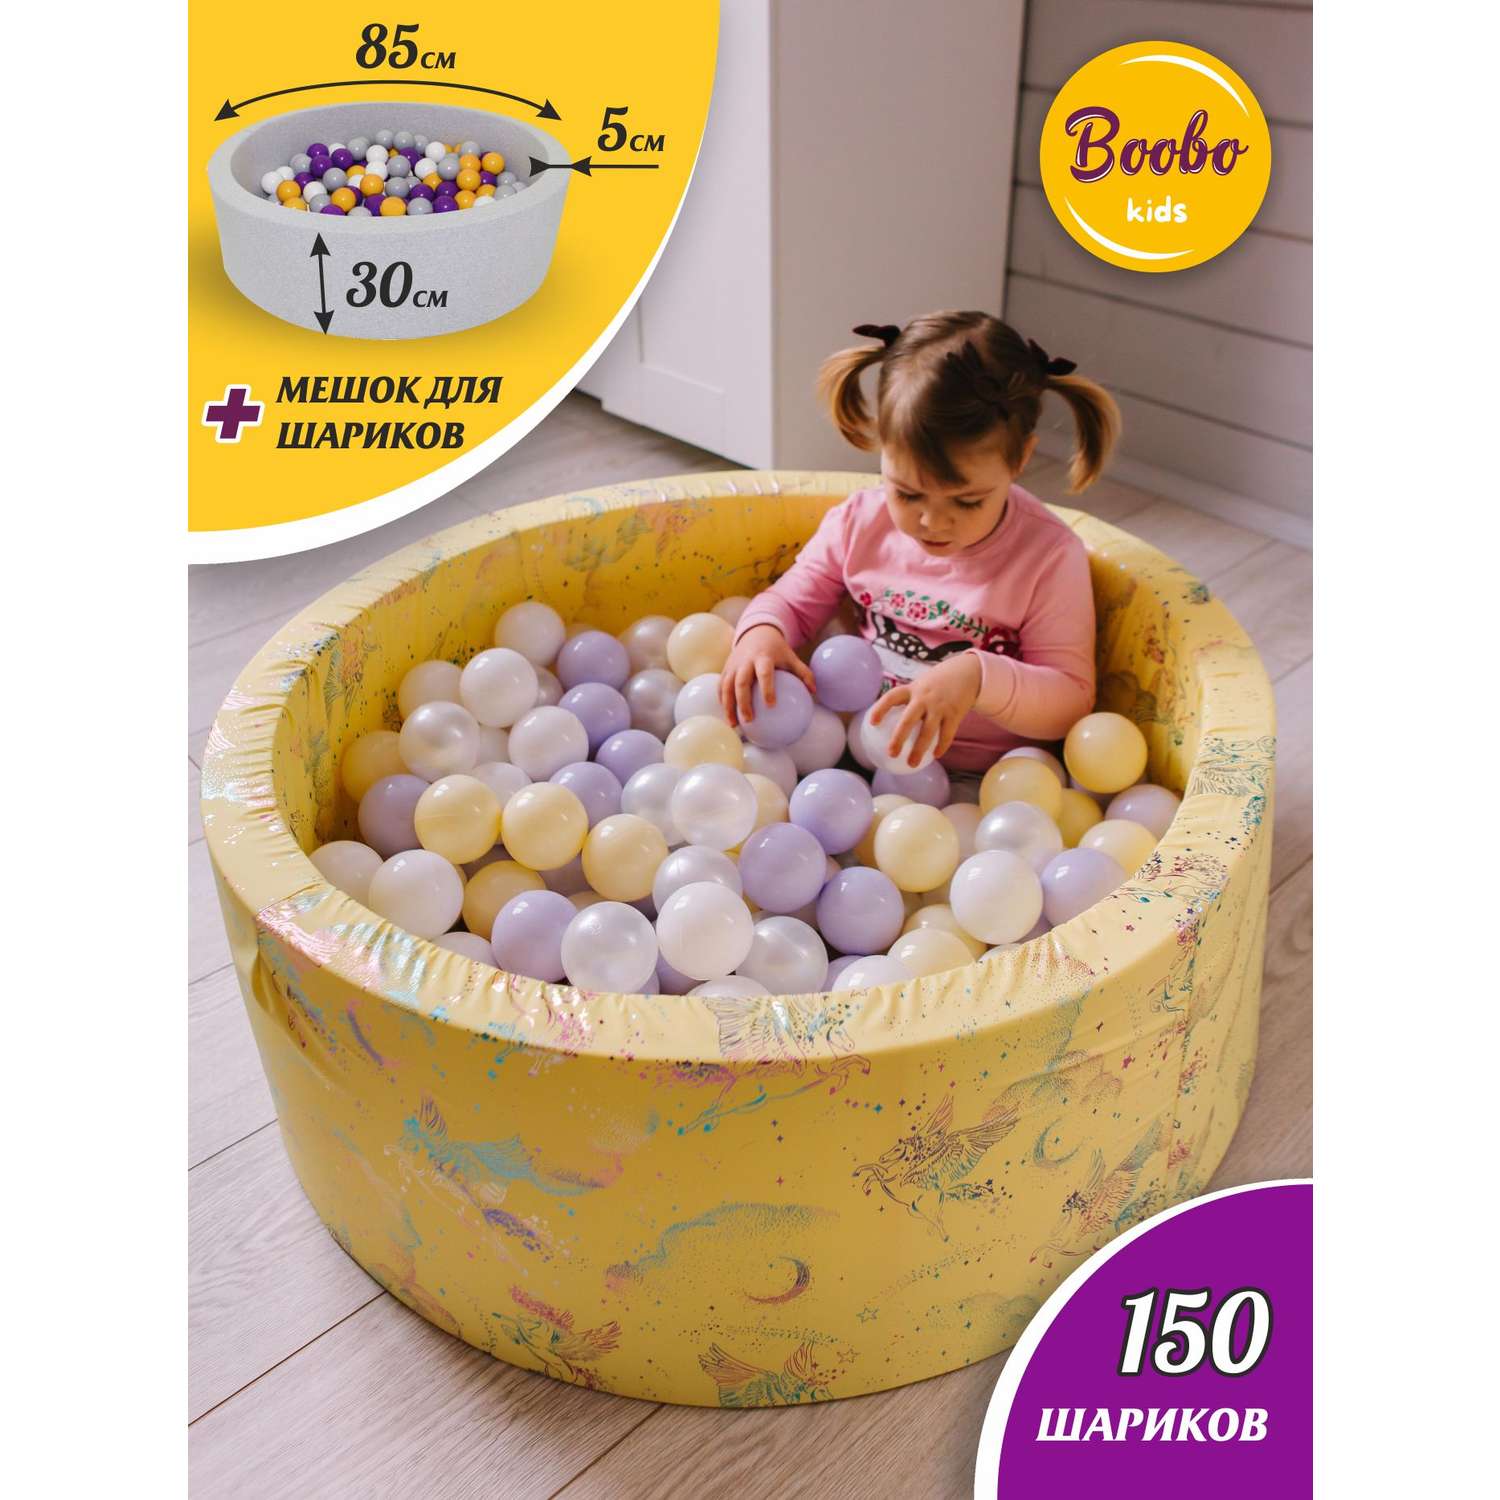 Сухой бассейн Boobo.kids 85х30 см 150 шаров жёлтый - фото 1